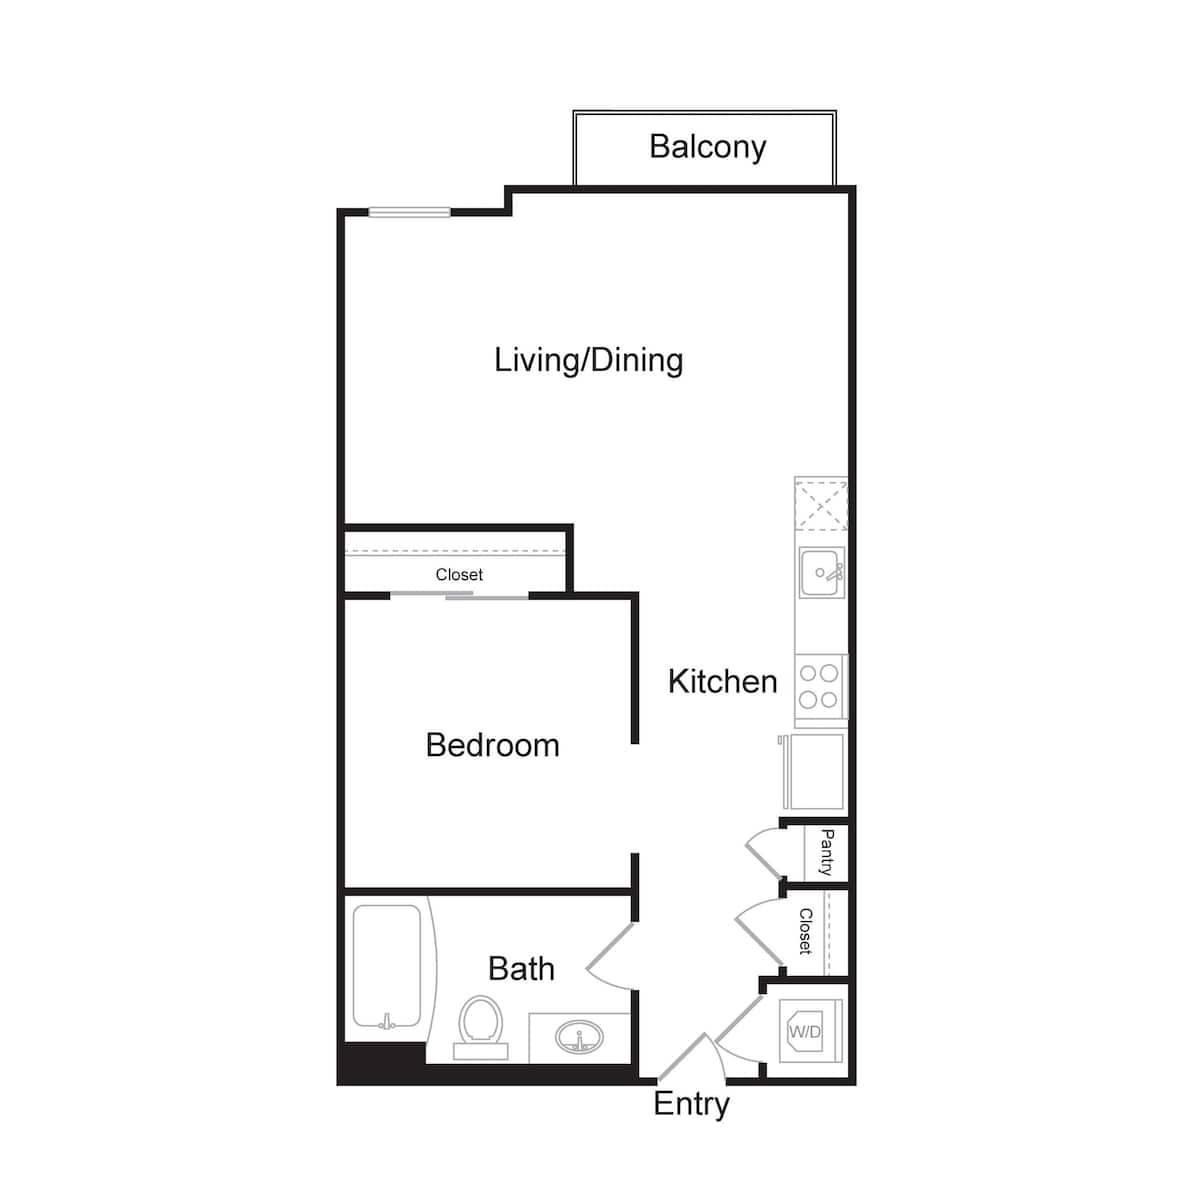 Floorplan diagram for S4, showing 1 bedroom